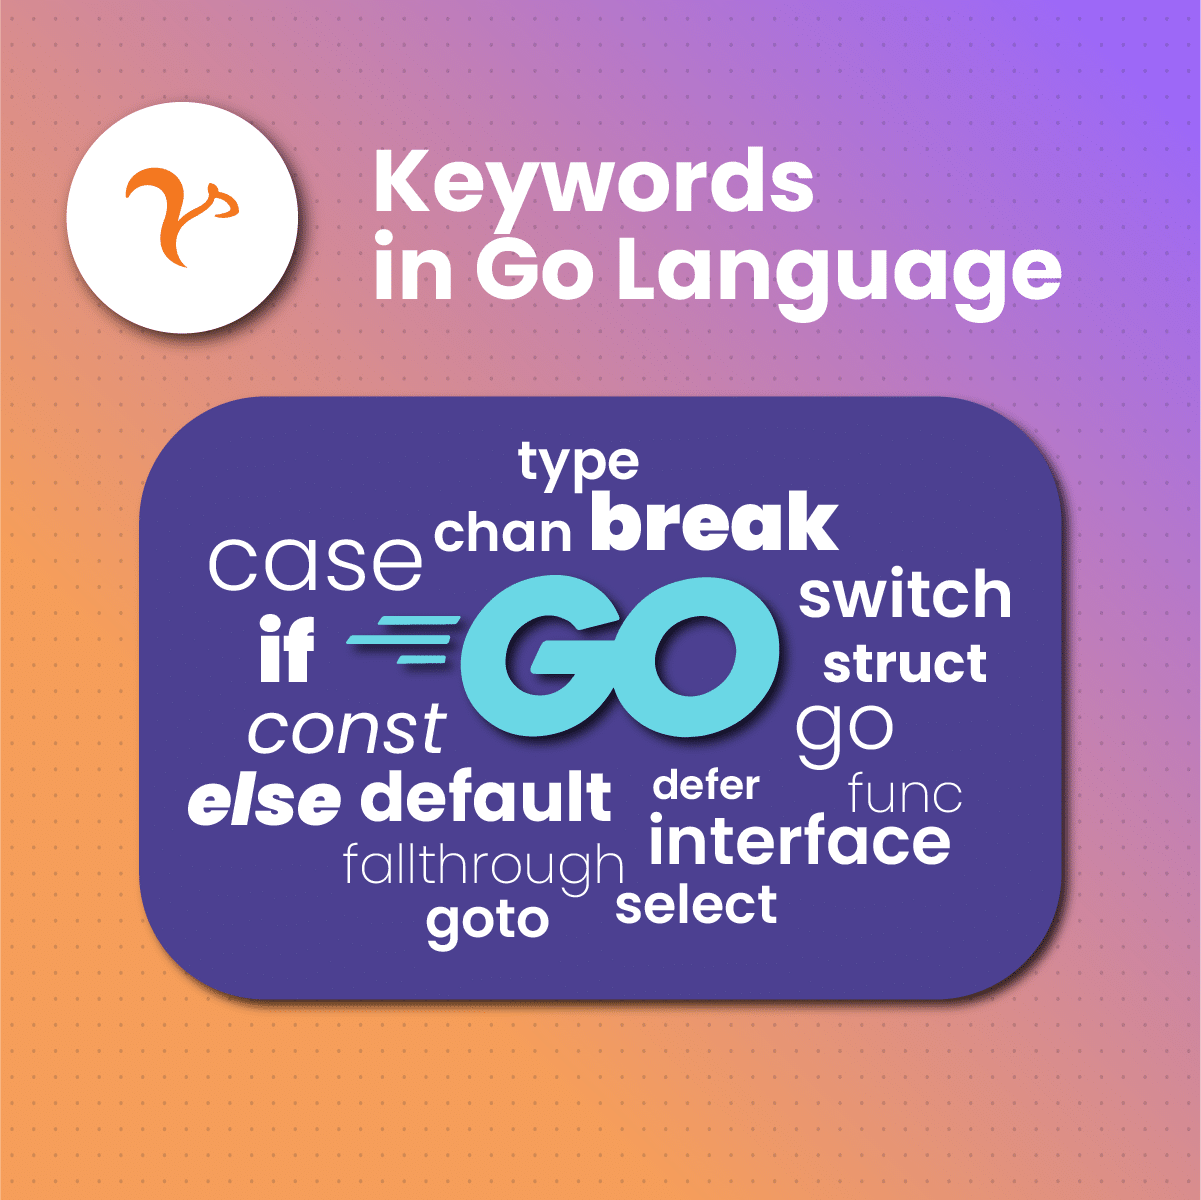 Keywords in Go Language